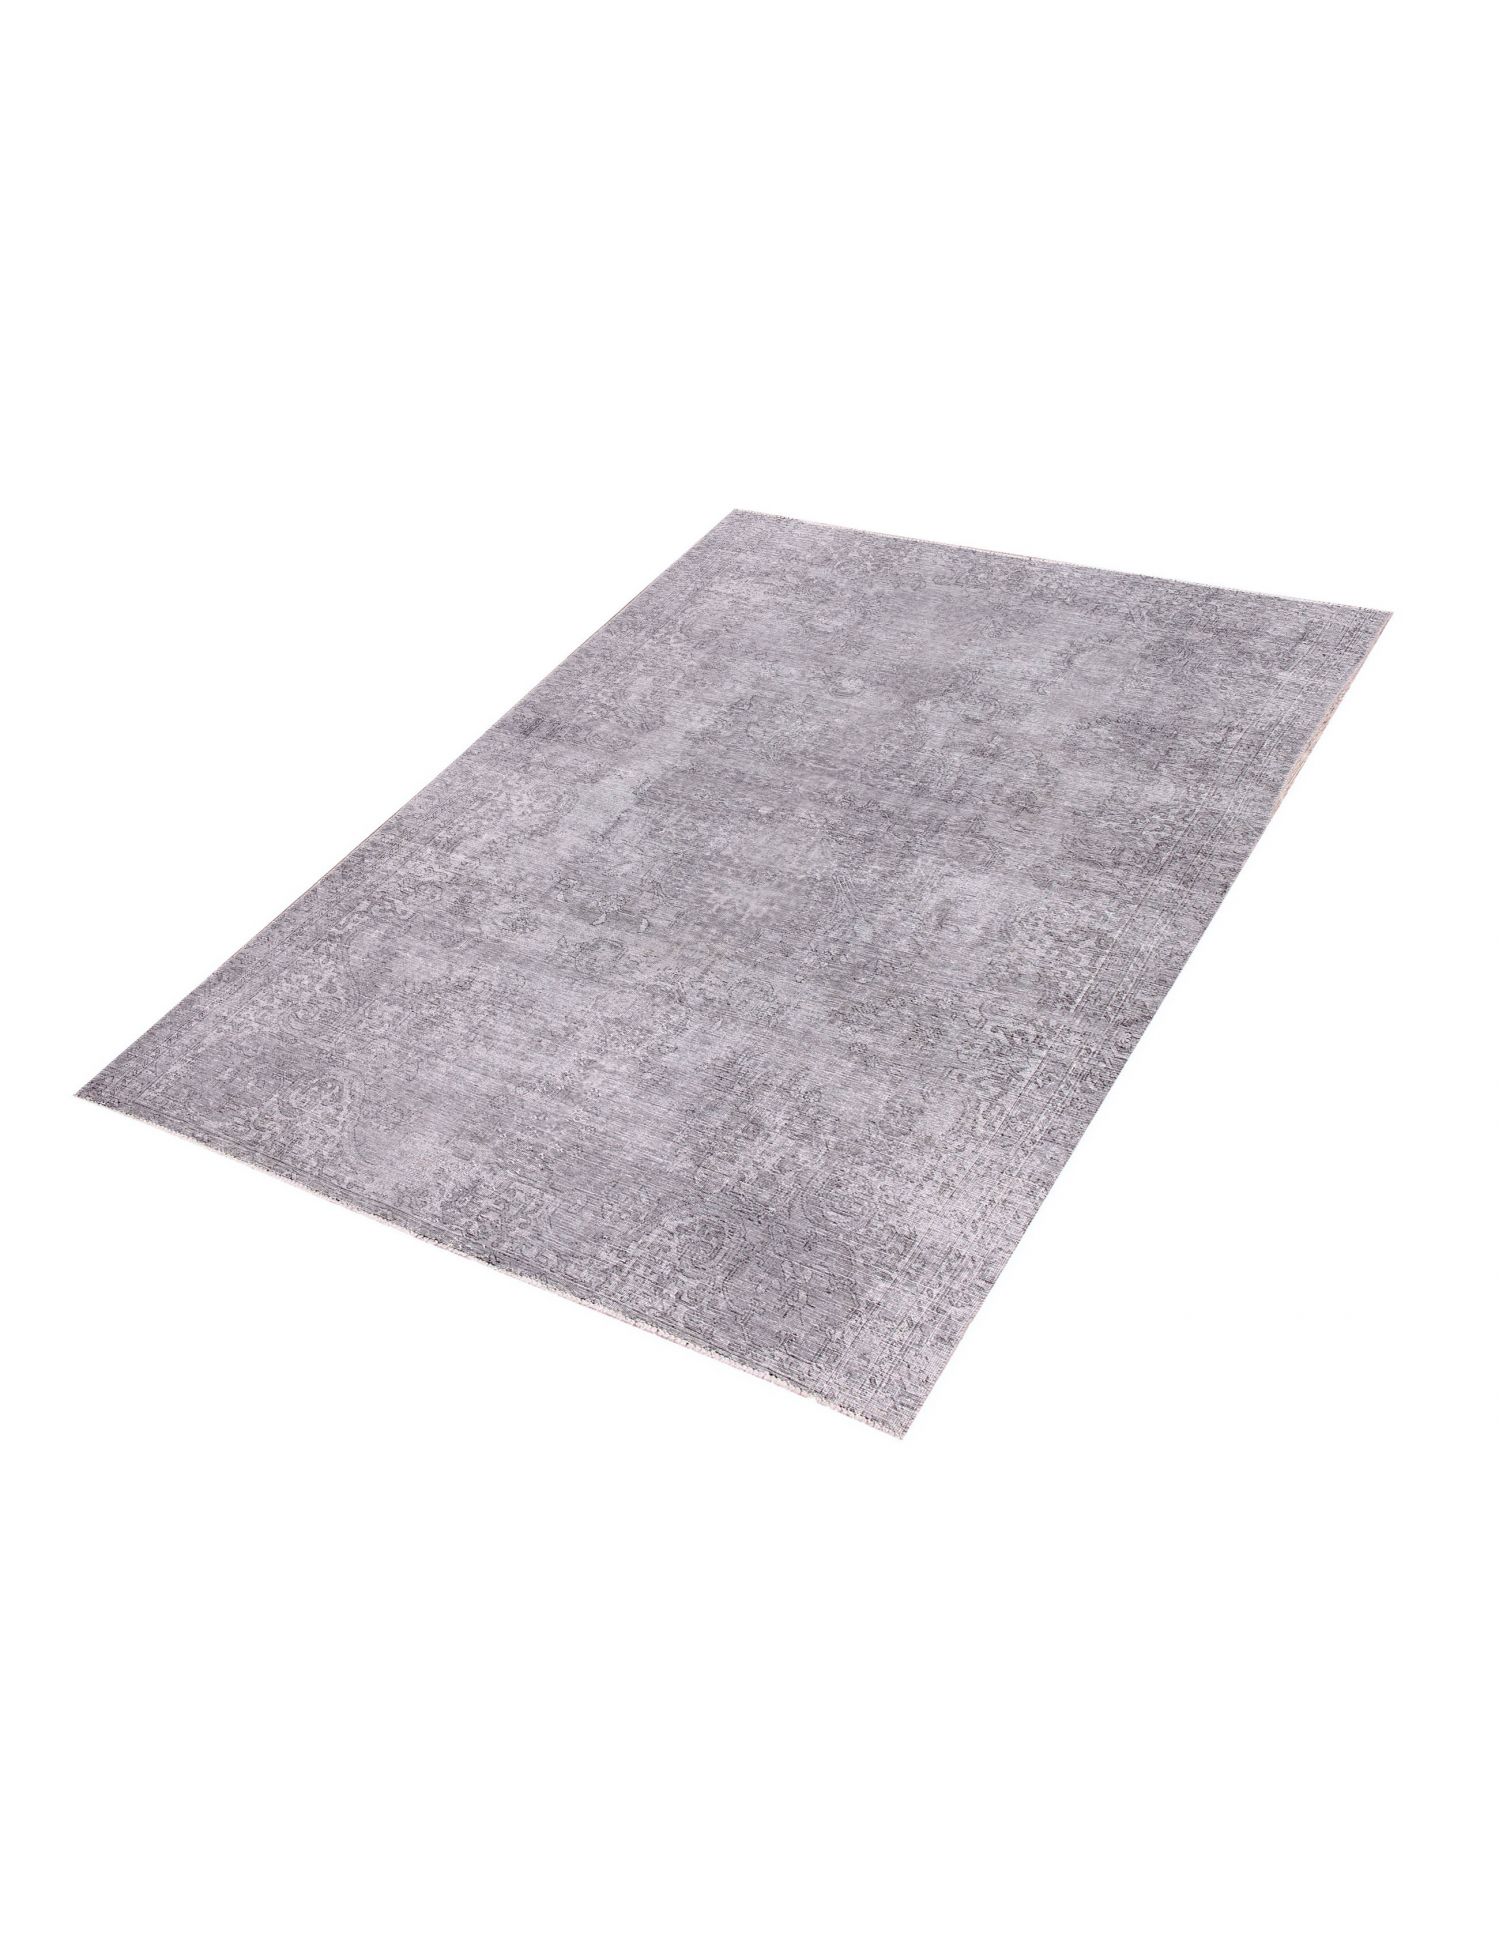 Persischer vintage teppich  grau <br/>270 x 190 cm